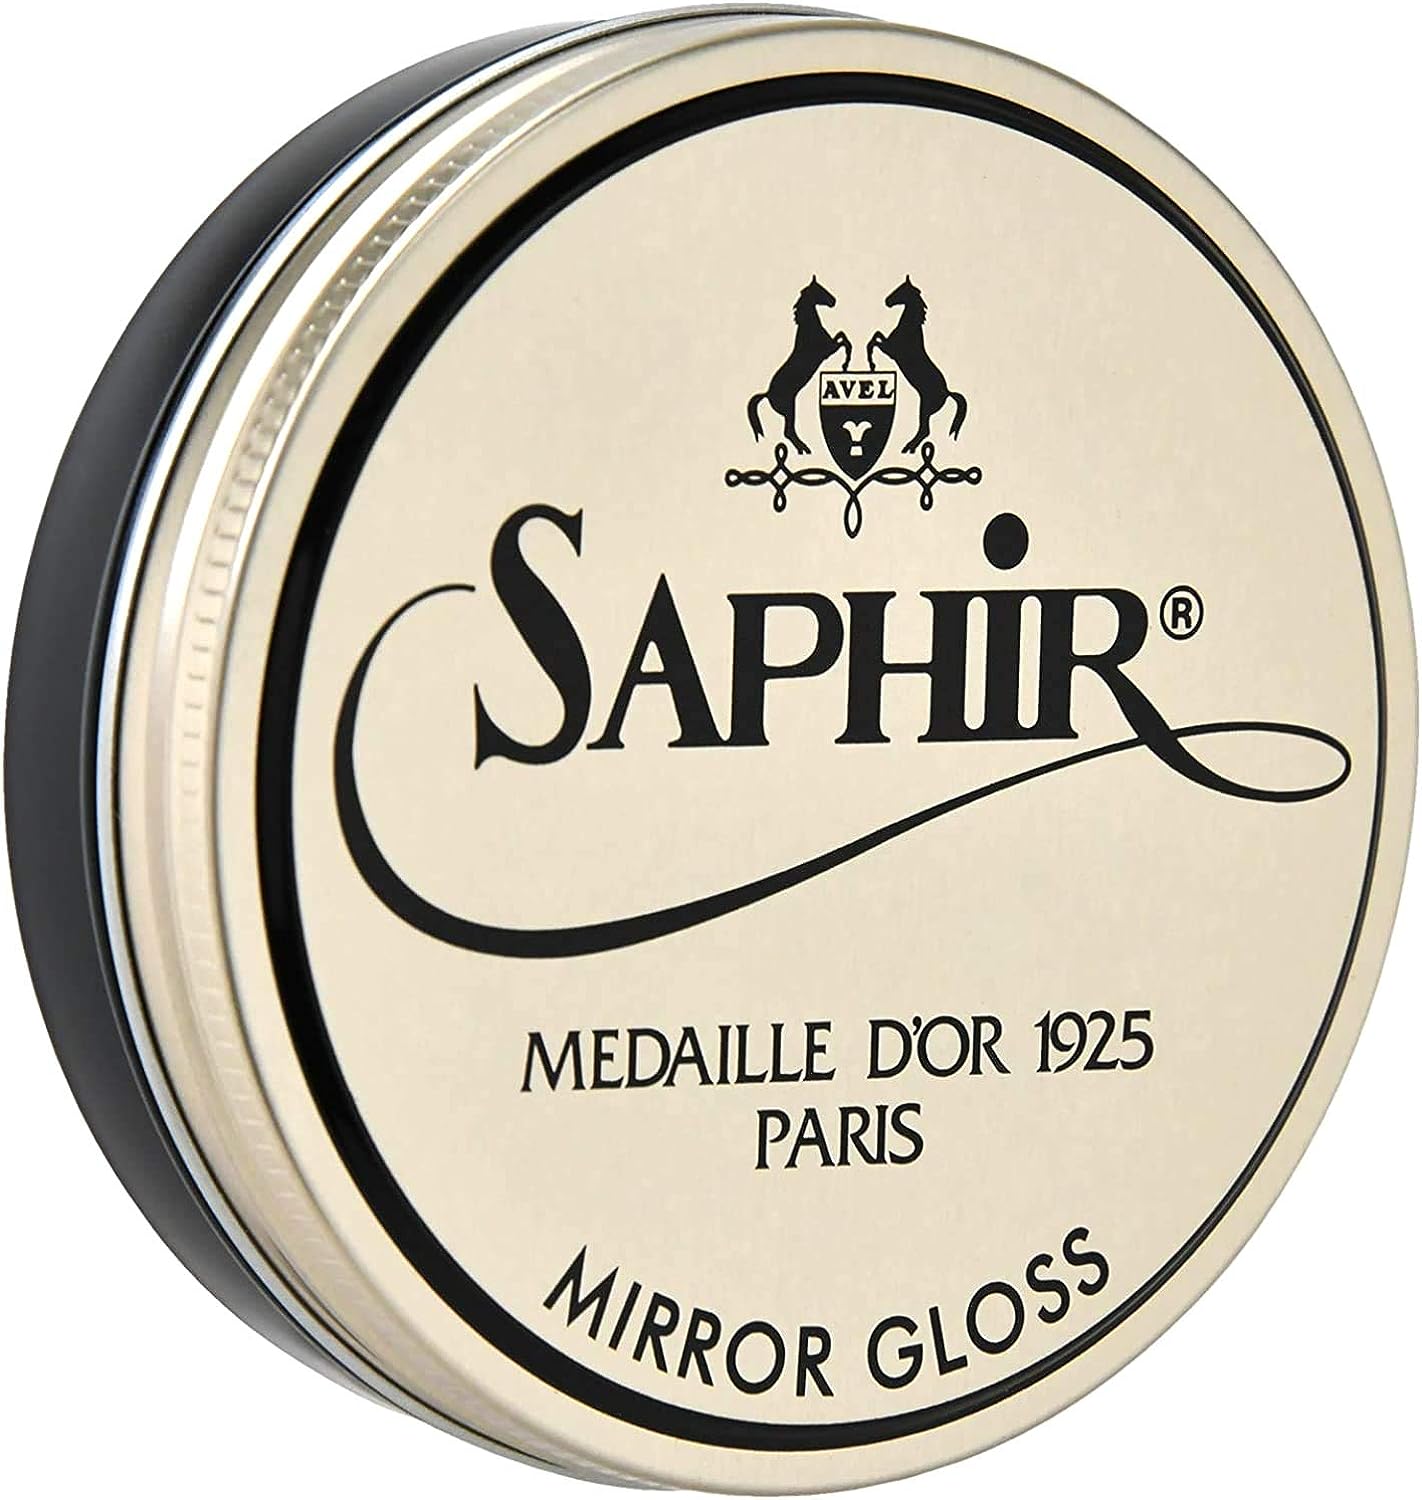 SAPHIR Medaille d’Or Mirror Gloss - Natural Wax Polish [...]